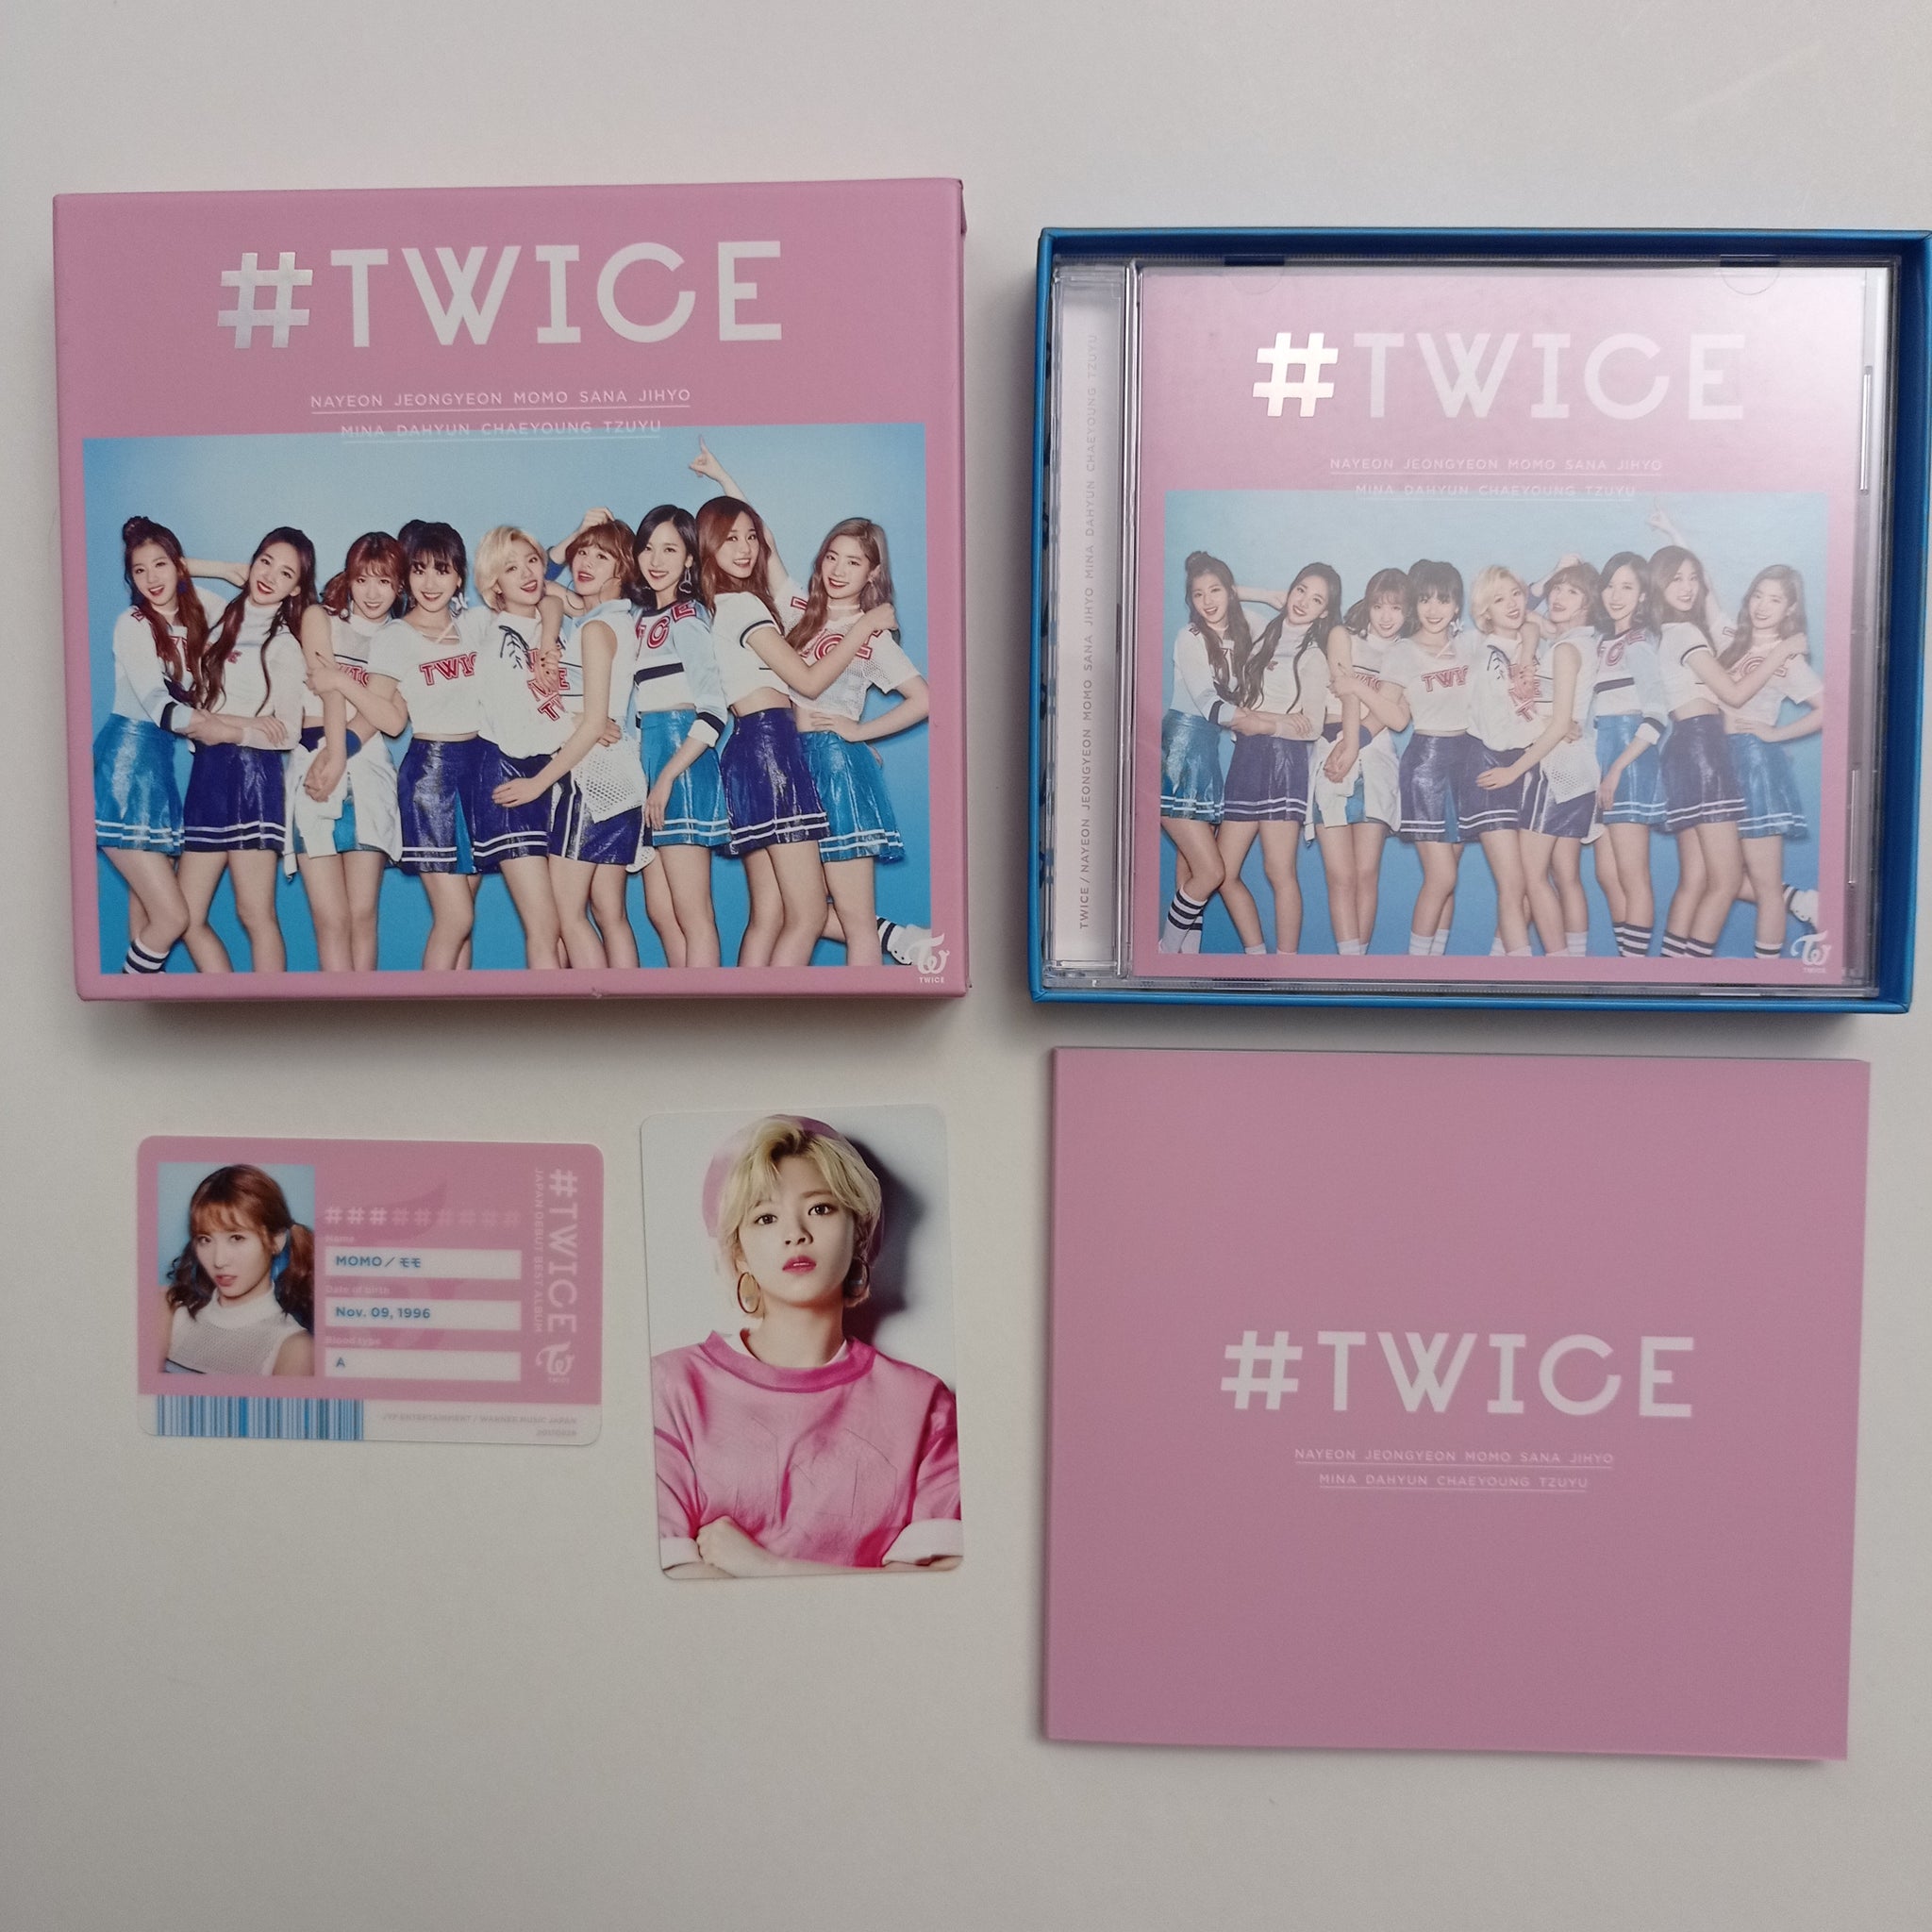 TWICE - #TWICE Limited Edition A ver. (NUEVO) 1st Album debut – piapollo